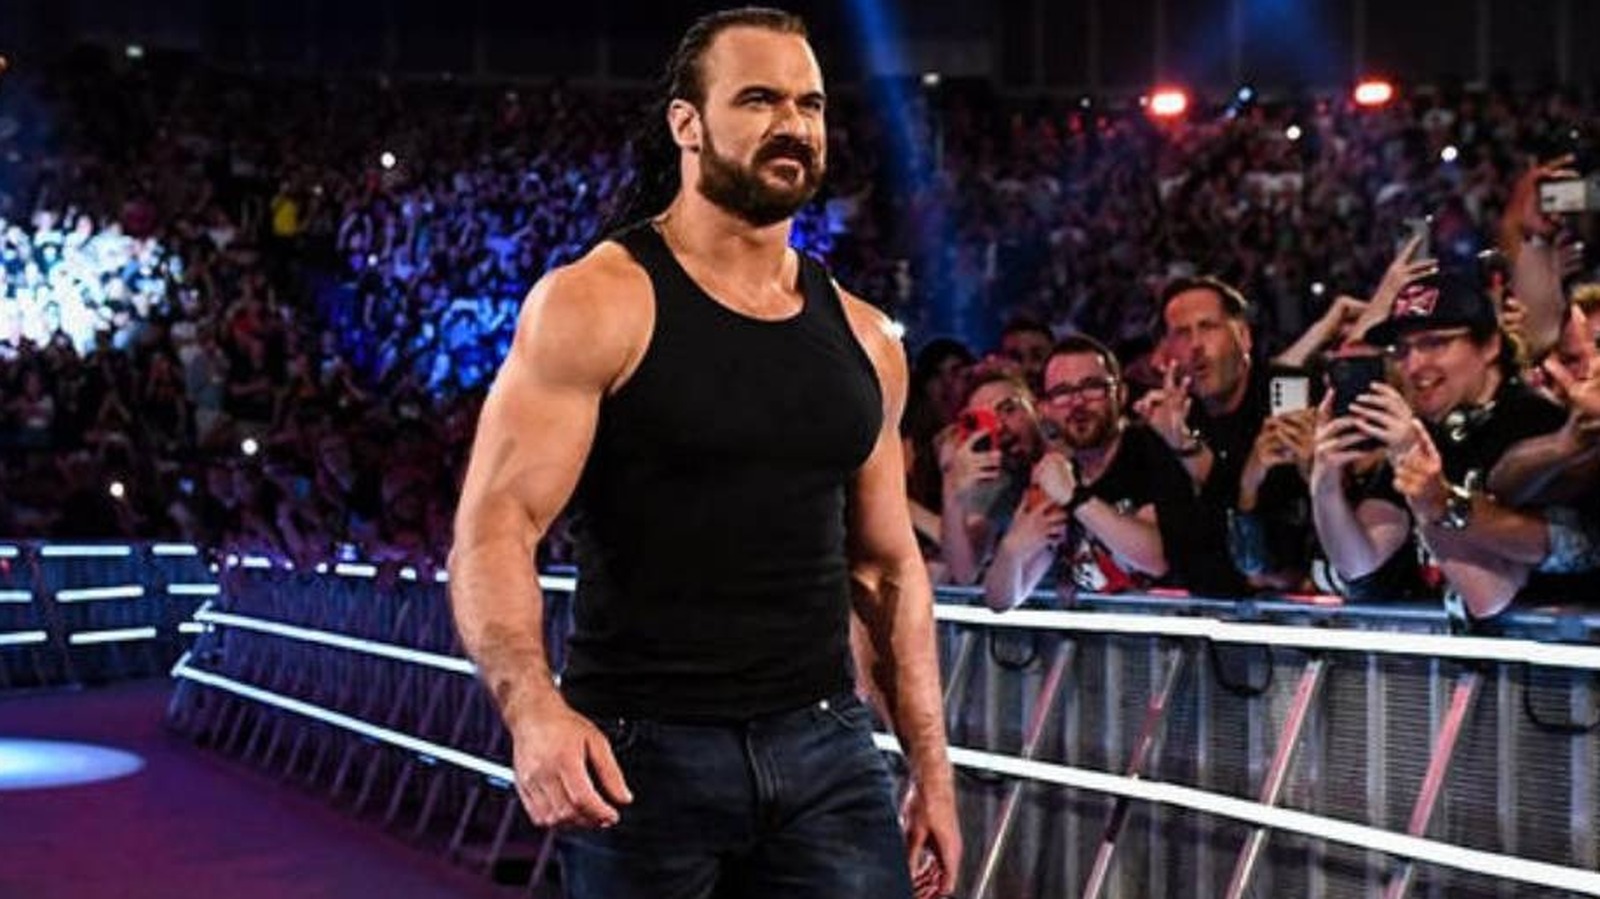 Se informa que el contrato de Drew McIntyre con la WWE se extendió a WrestleMania, no hay ningún movimiento sobre el nuevo acuerdo